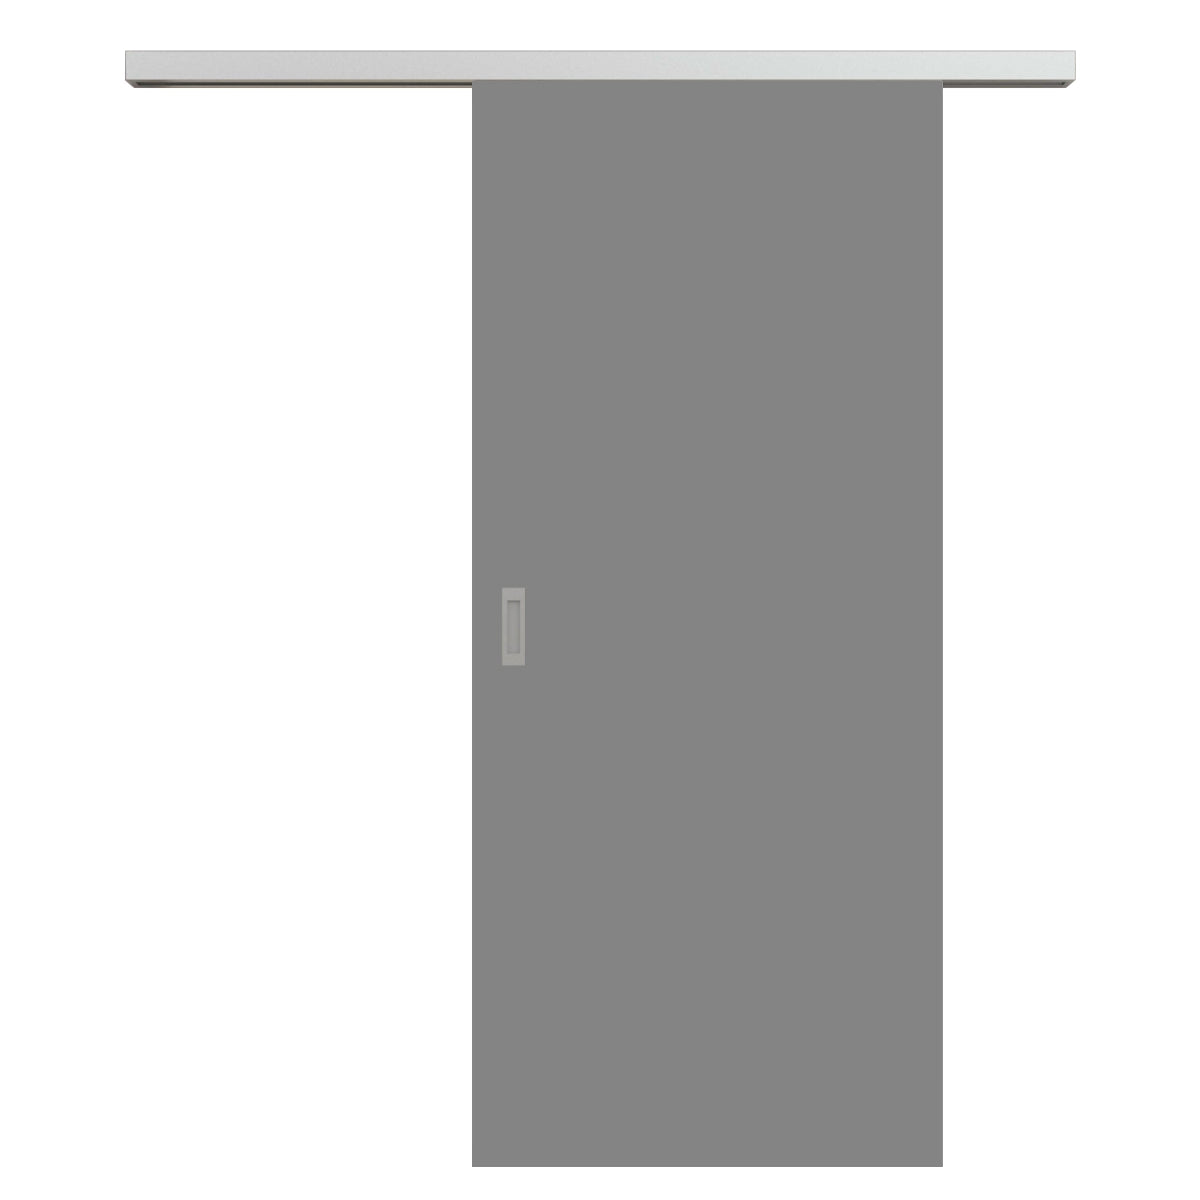 Schiebetür für Set mit Edelstahllaufkasten grau glatt